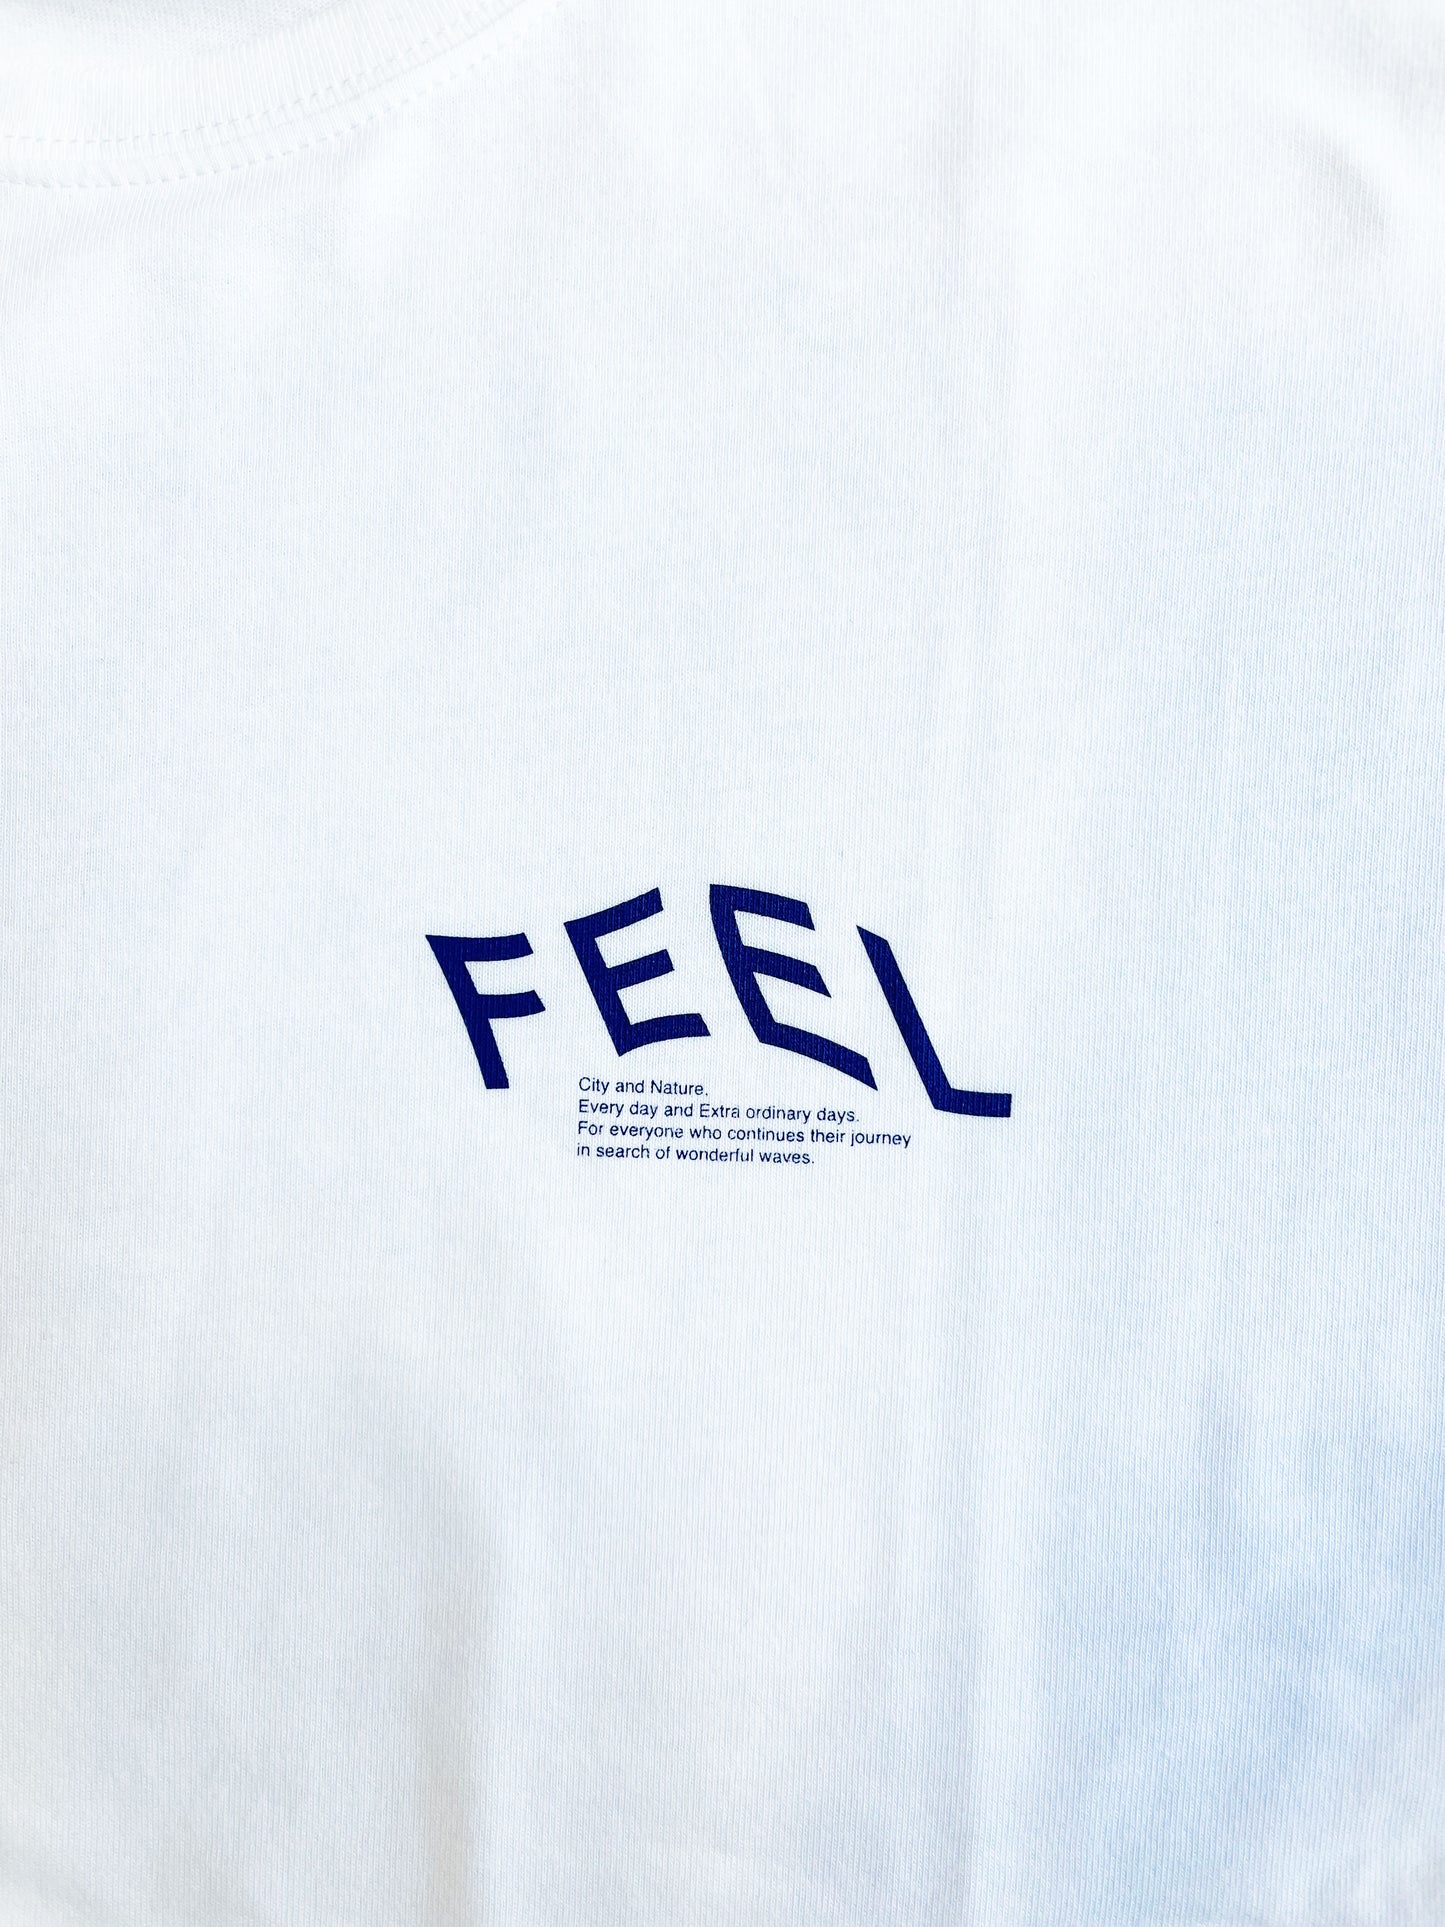 【NEW】FEEL TEE